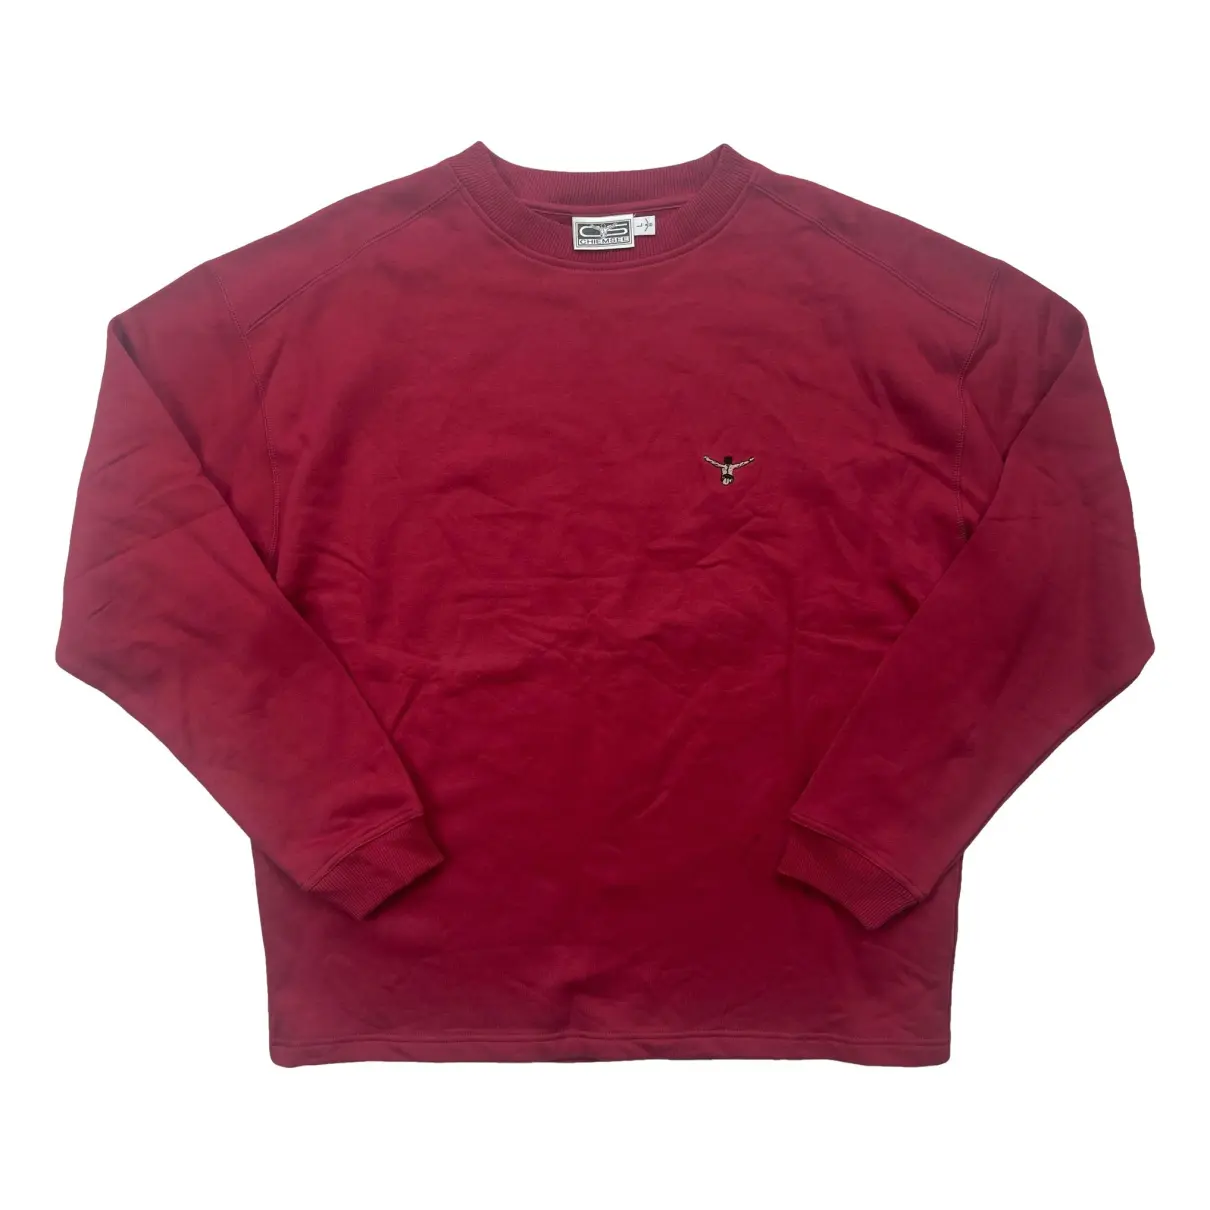 Burgundy - International size Sweatshirt L 39331618 Chiemsee in Cotton